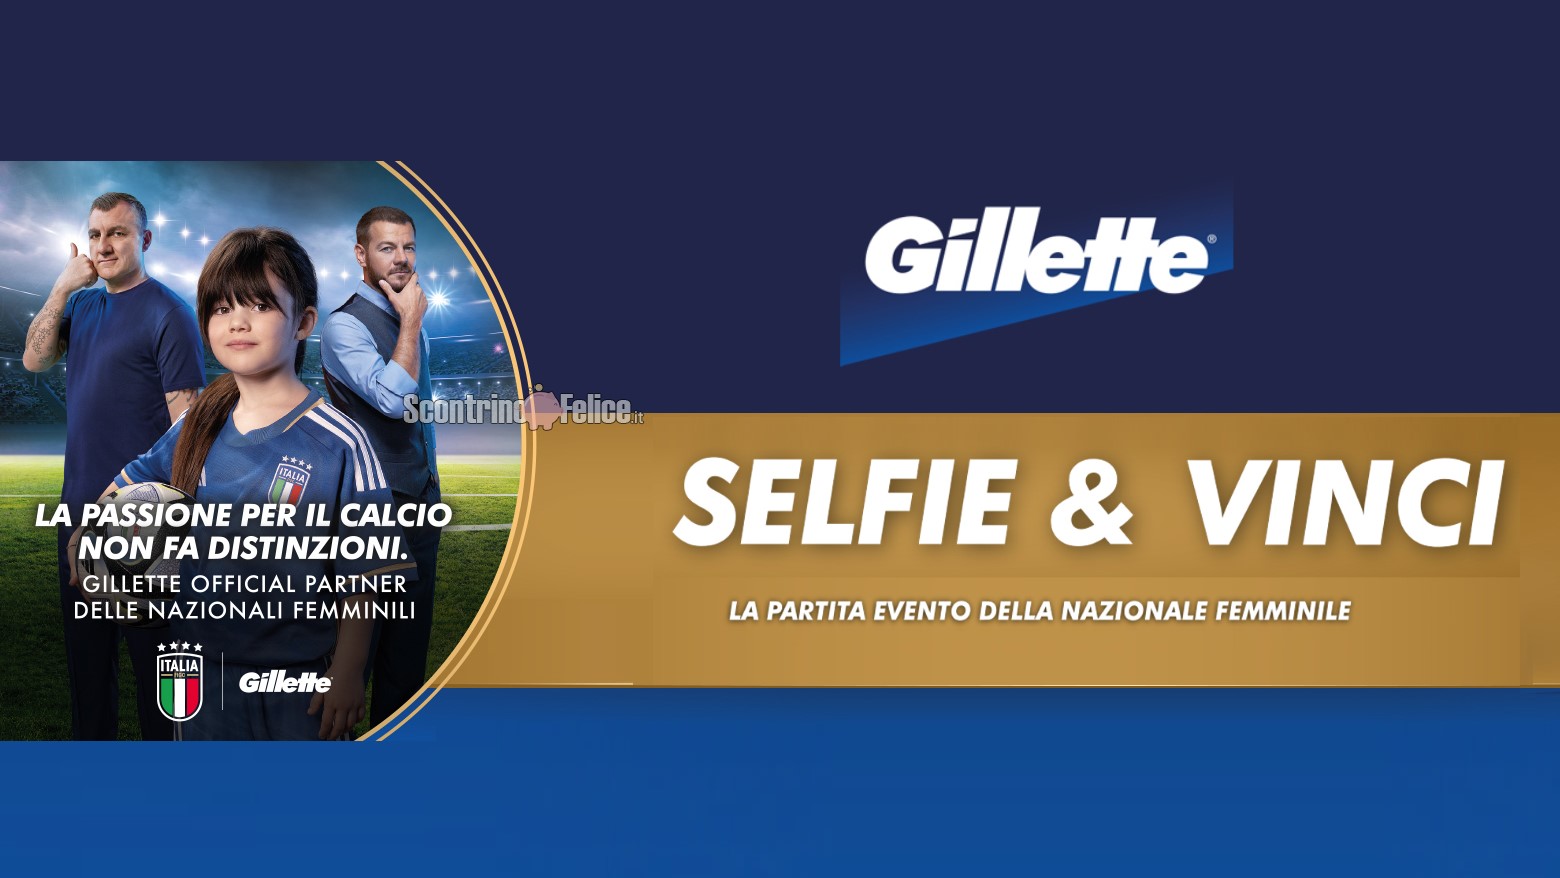 Concorso Gillette Selfie & Vinci vinci la partita evento della Nazionale Femminile